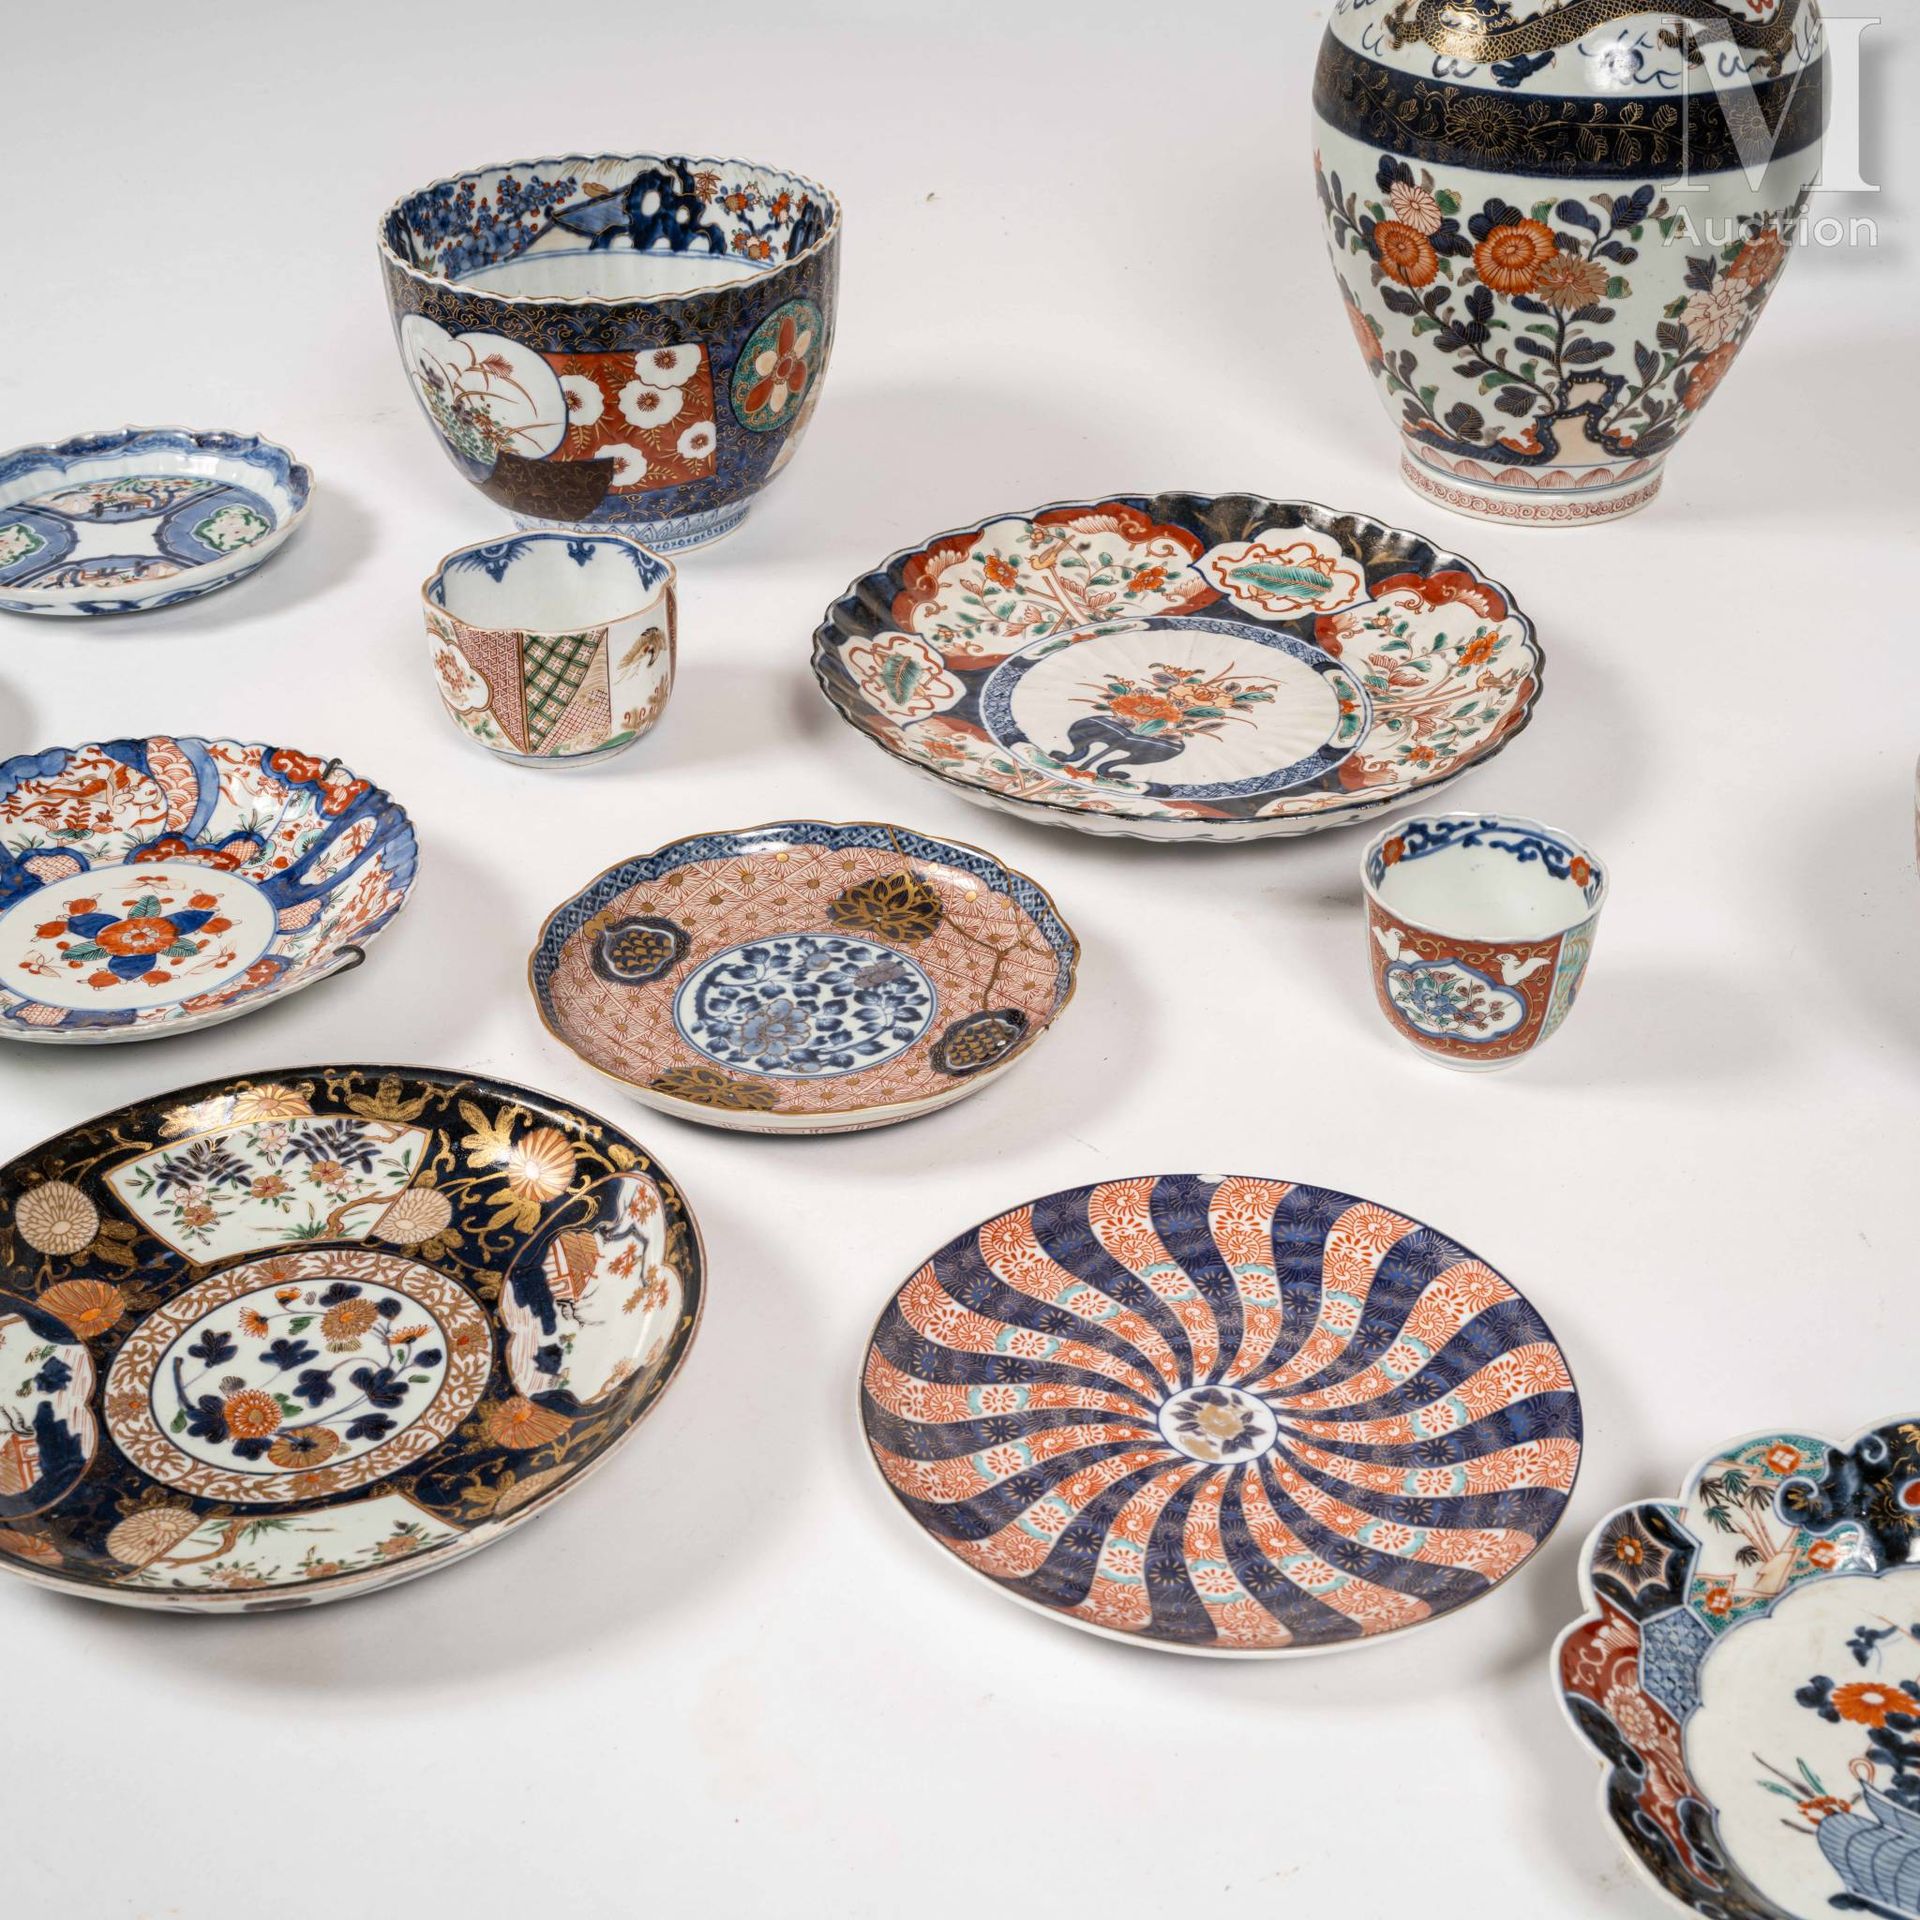 JAPON, XIXe-XXe siècle 一套13件日本伊万里装饰的瓷器，包括一个盘子，一个花瓶，七个盘子，两个大碗和两个高脚杯。

缺陷和修复。